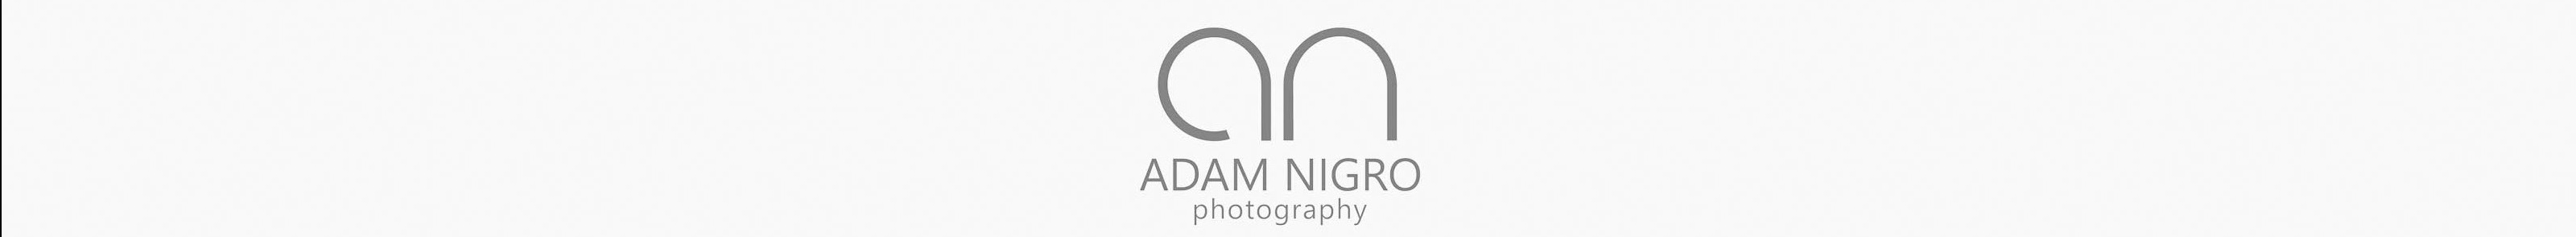 Adam Nigro's profile banner